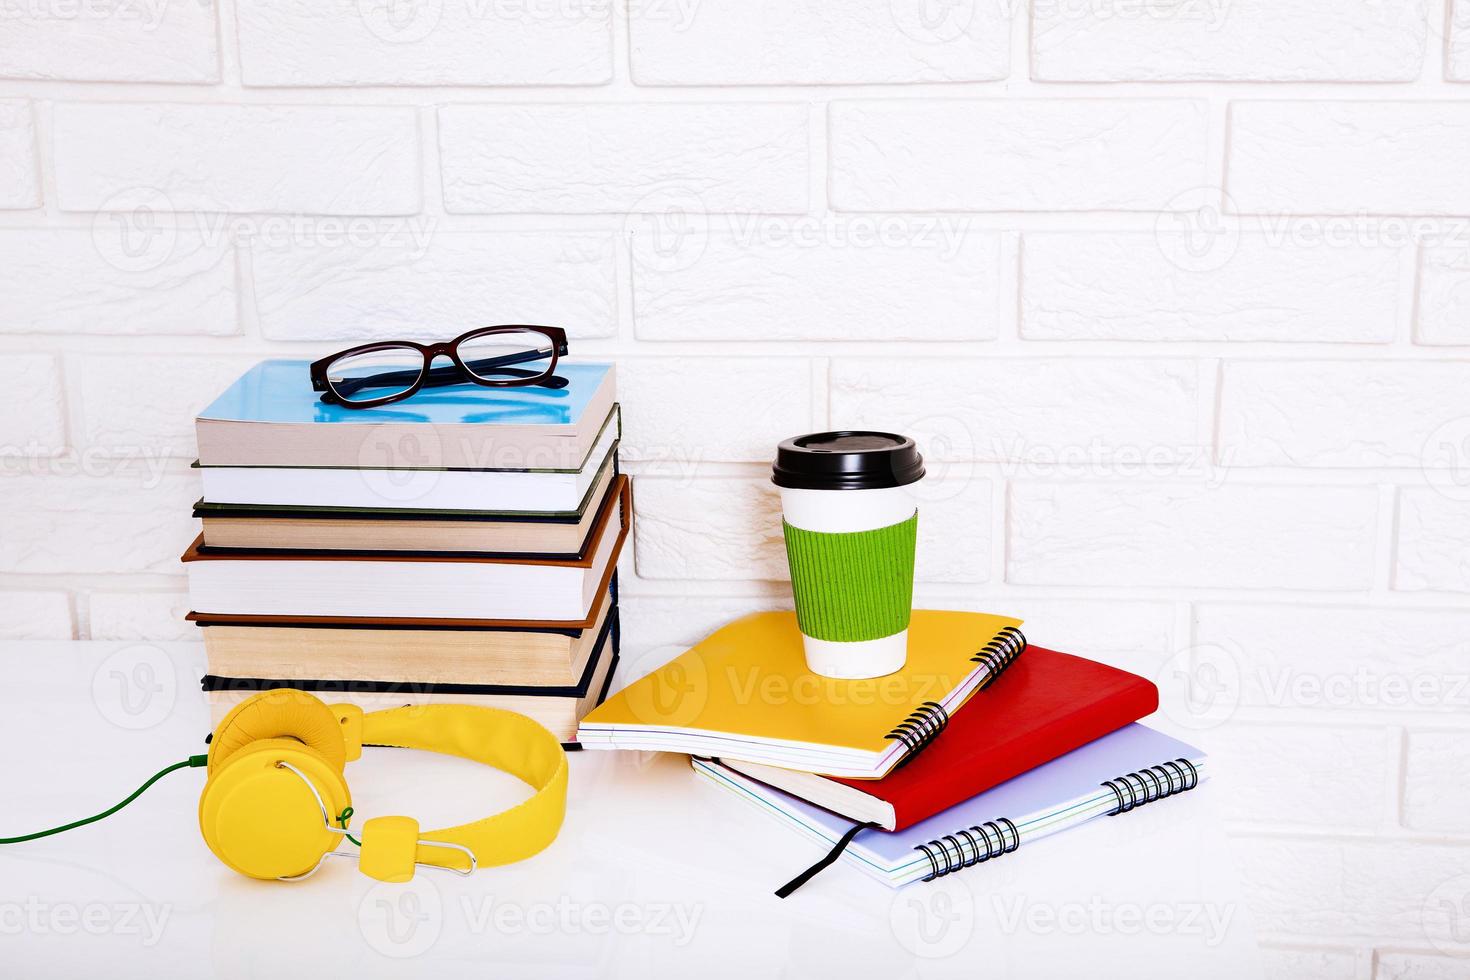 arbeitsplatz- und bildungszubehör auf dem tisch. Tasse Kaffee, Bücher, Gläser, Notizbücher, Kopfhörer. Bildung aufhalten foto